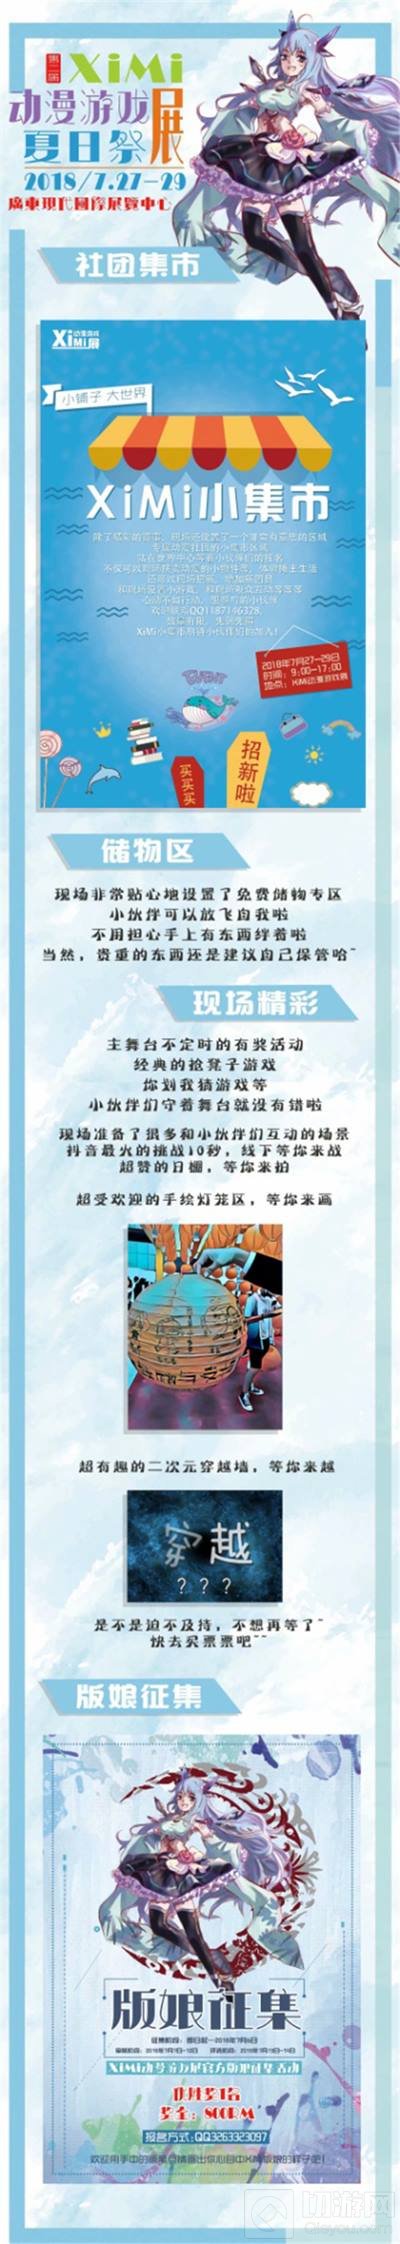 重庆海游携推理学院参展XiMi第2届动漫游戏展